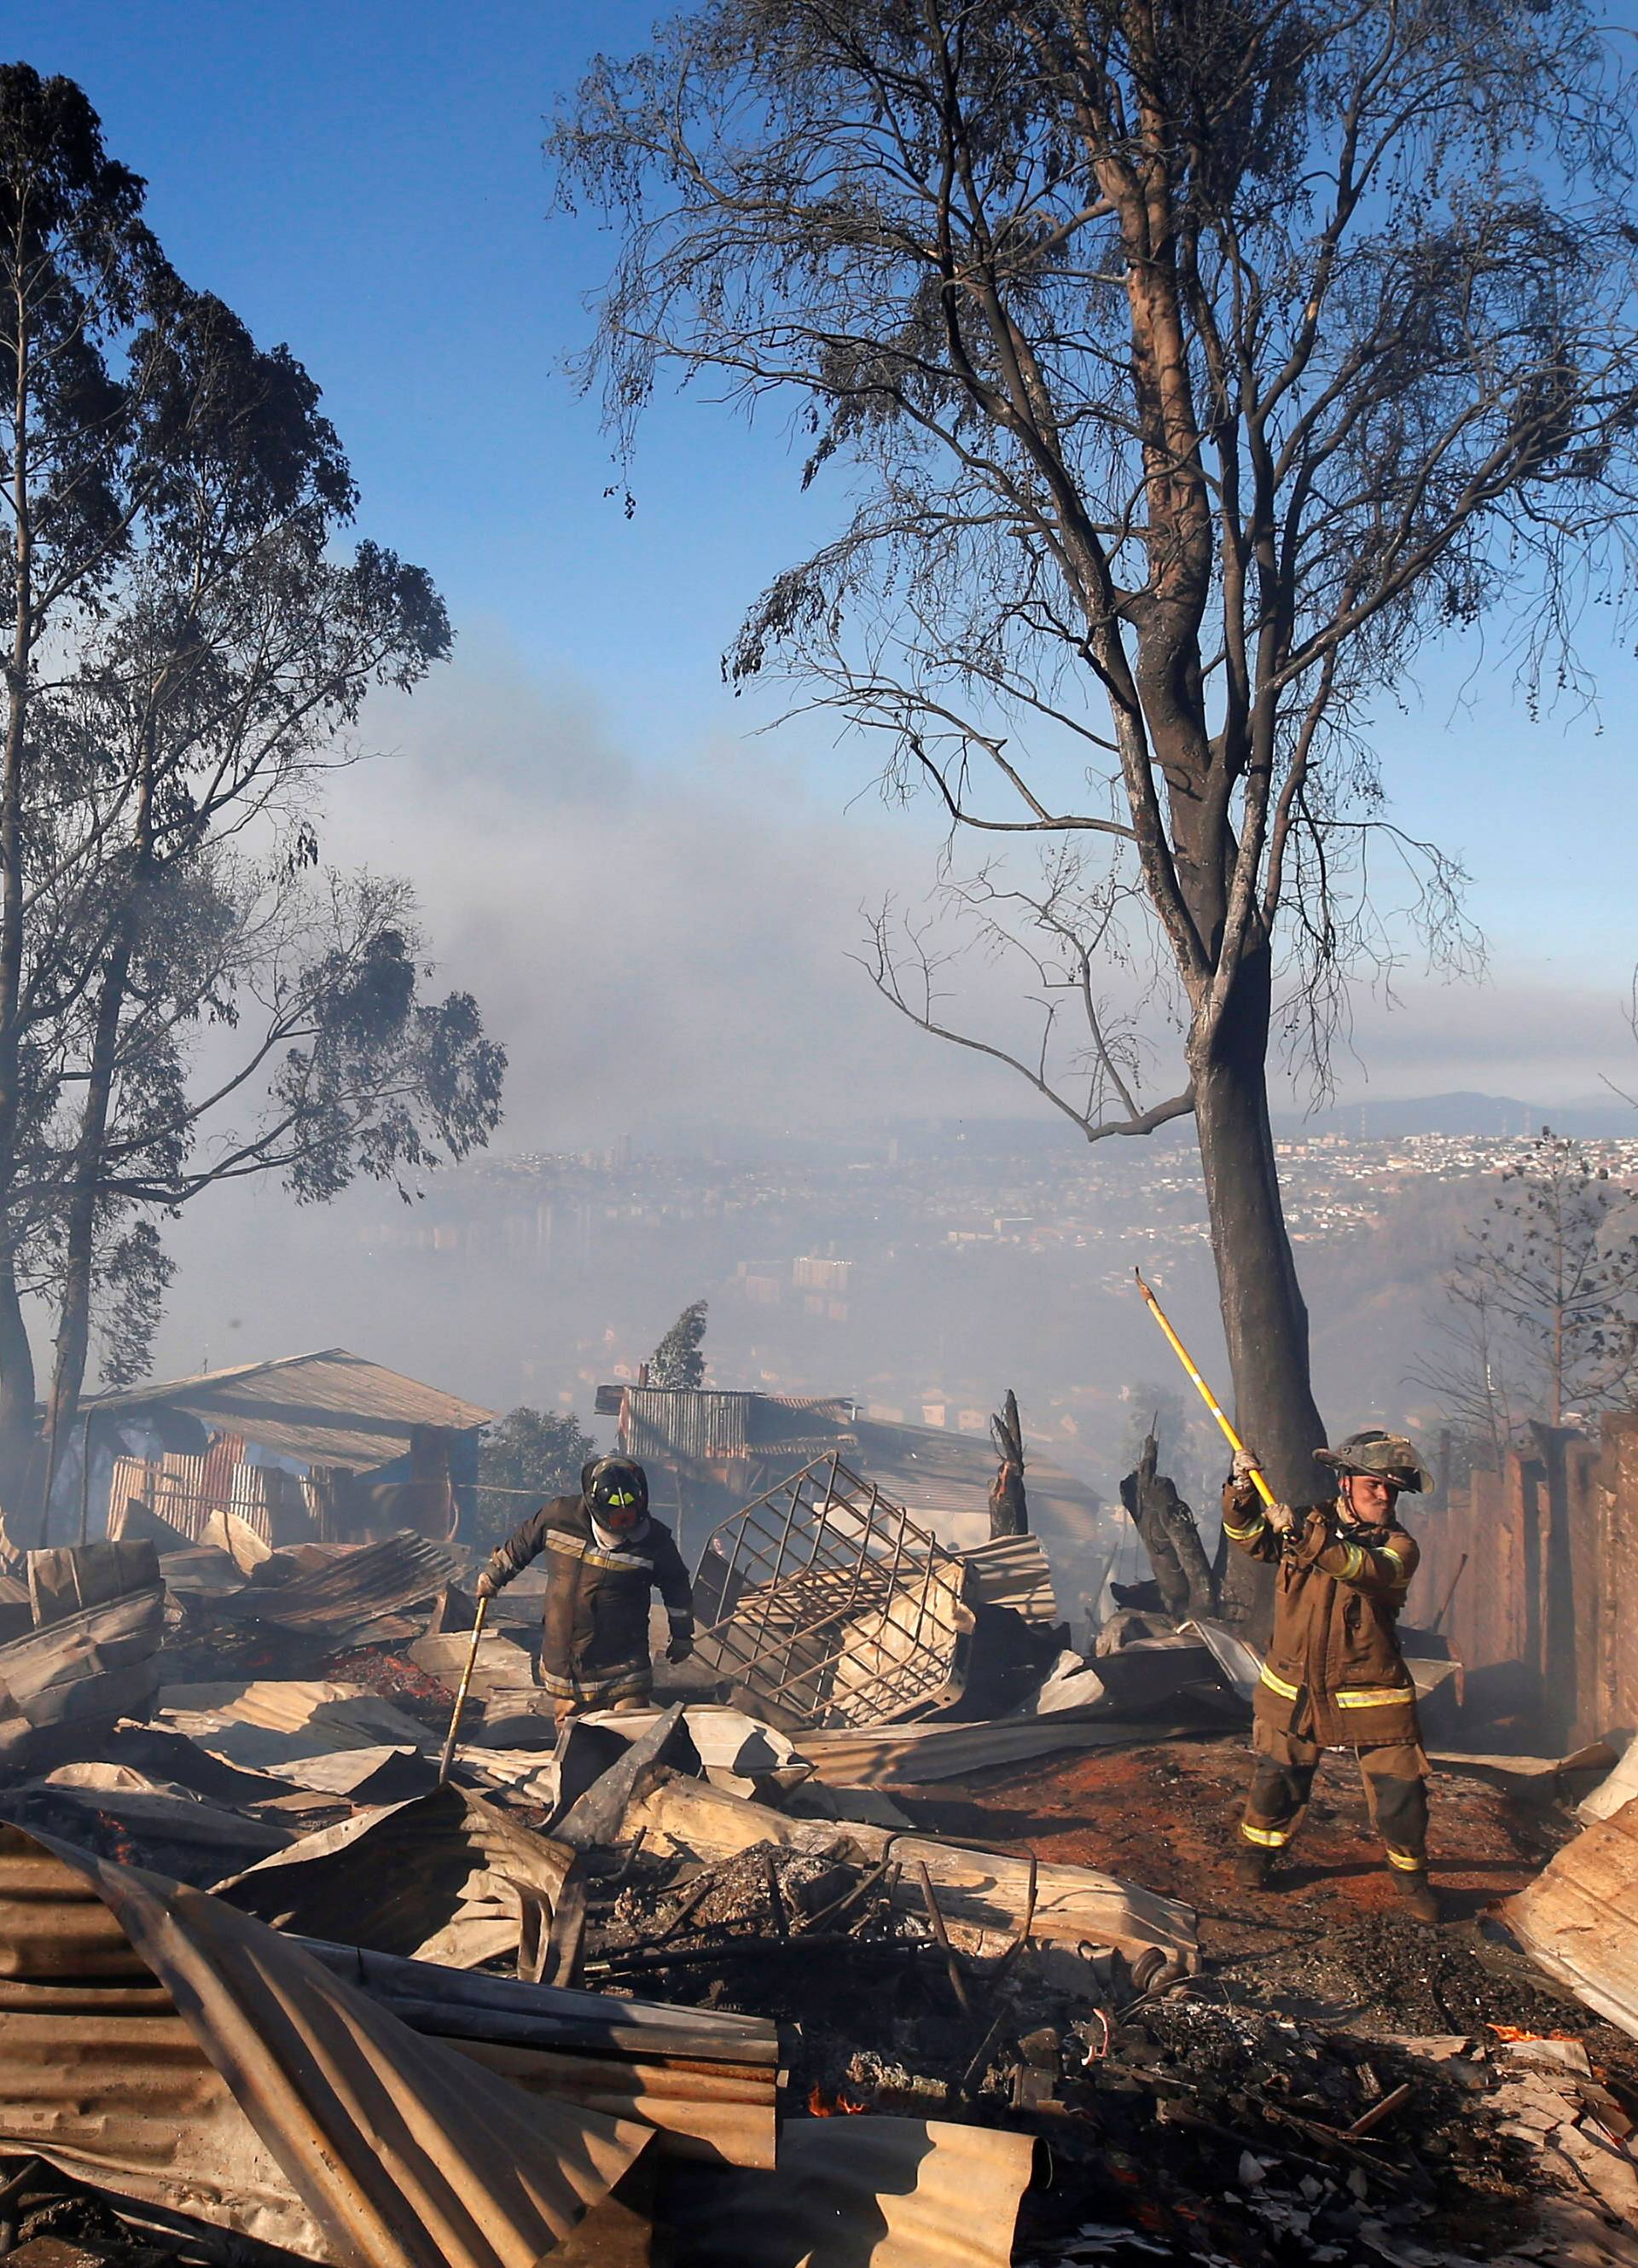 Evakuacija u tijeku: Stravični požar guta  grad, gori 120 kuća